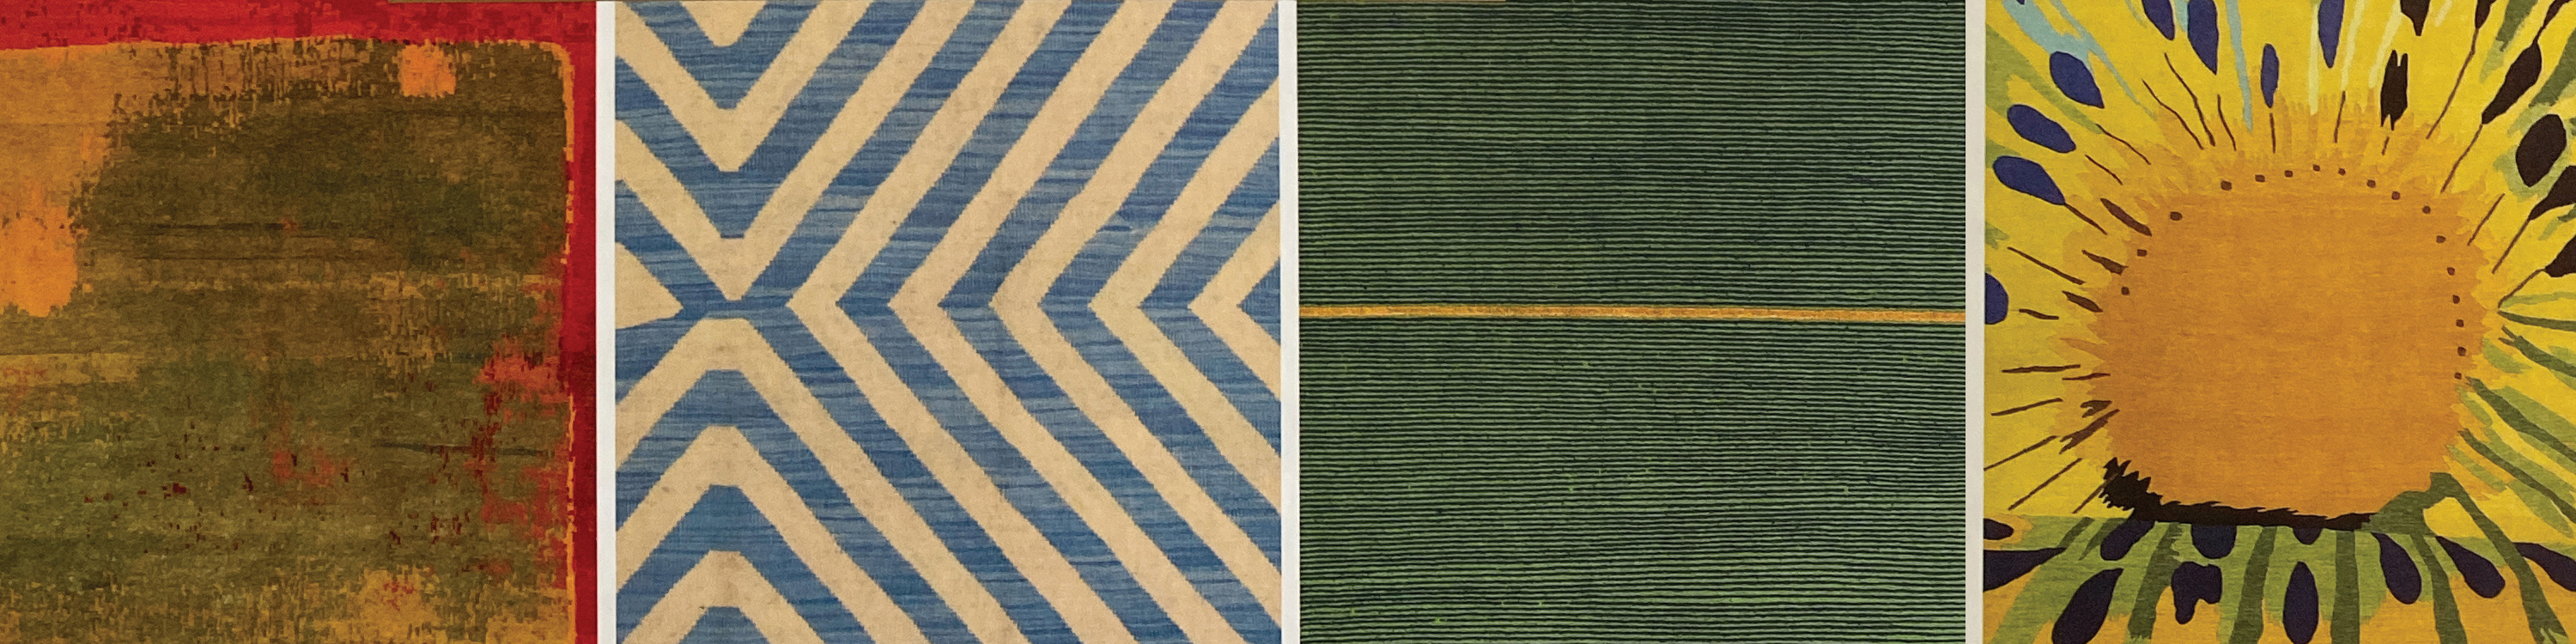 The Handmade Carpet | A Review